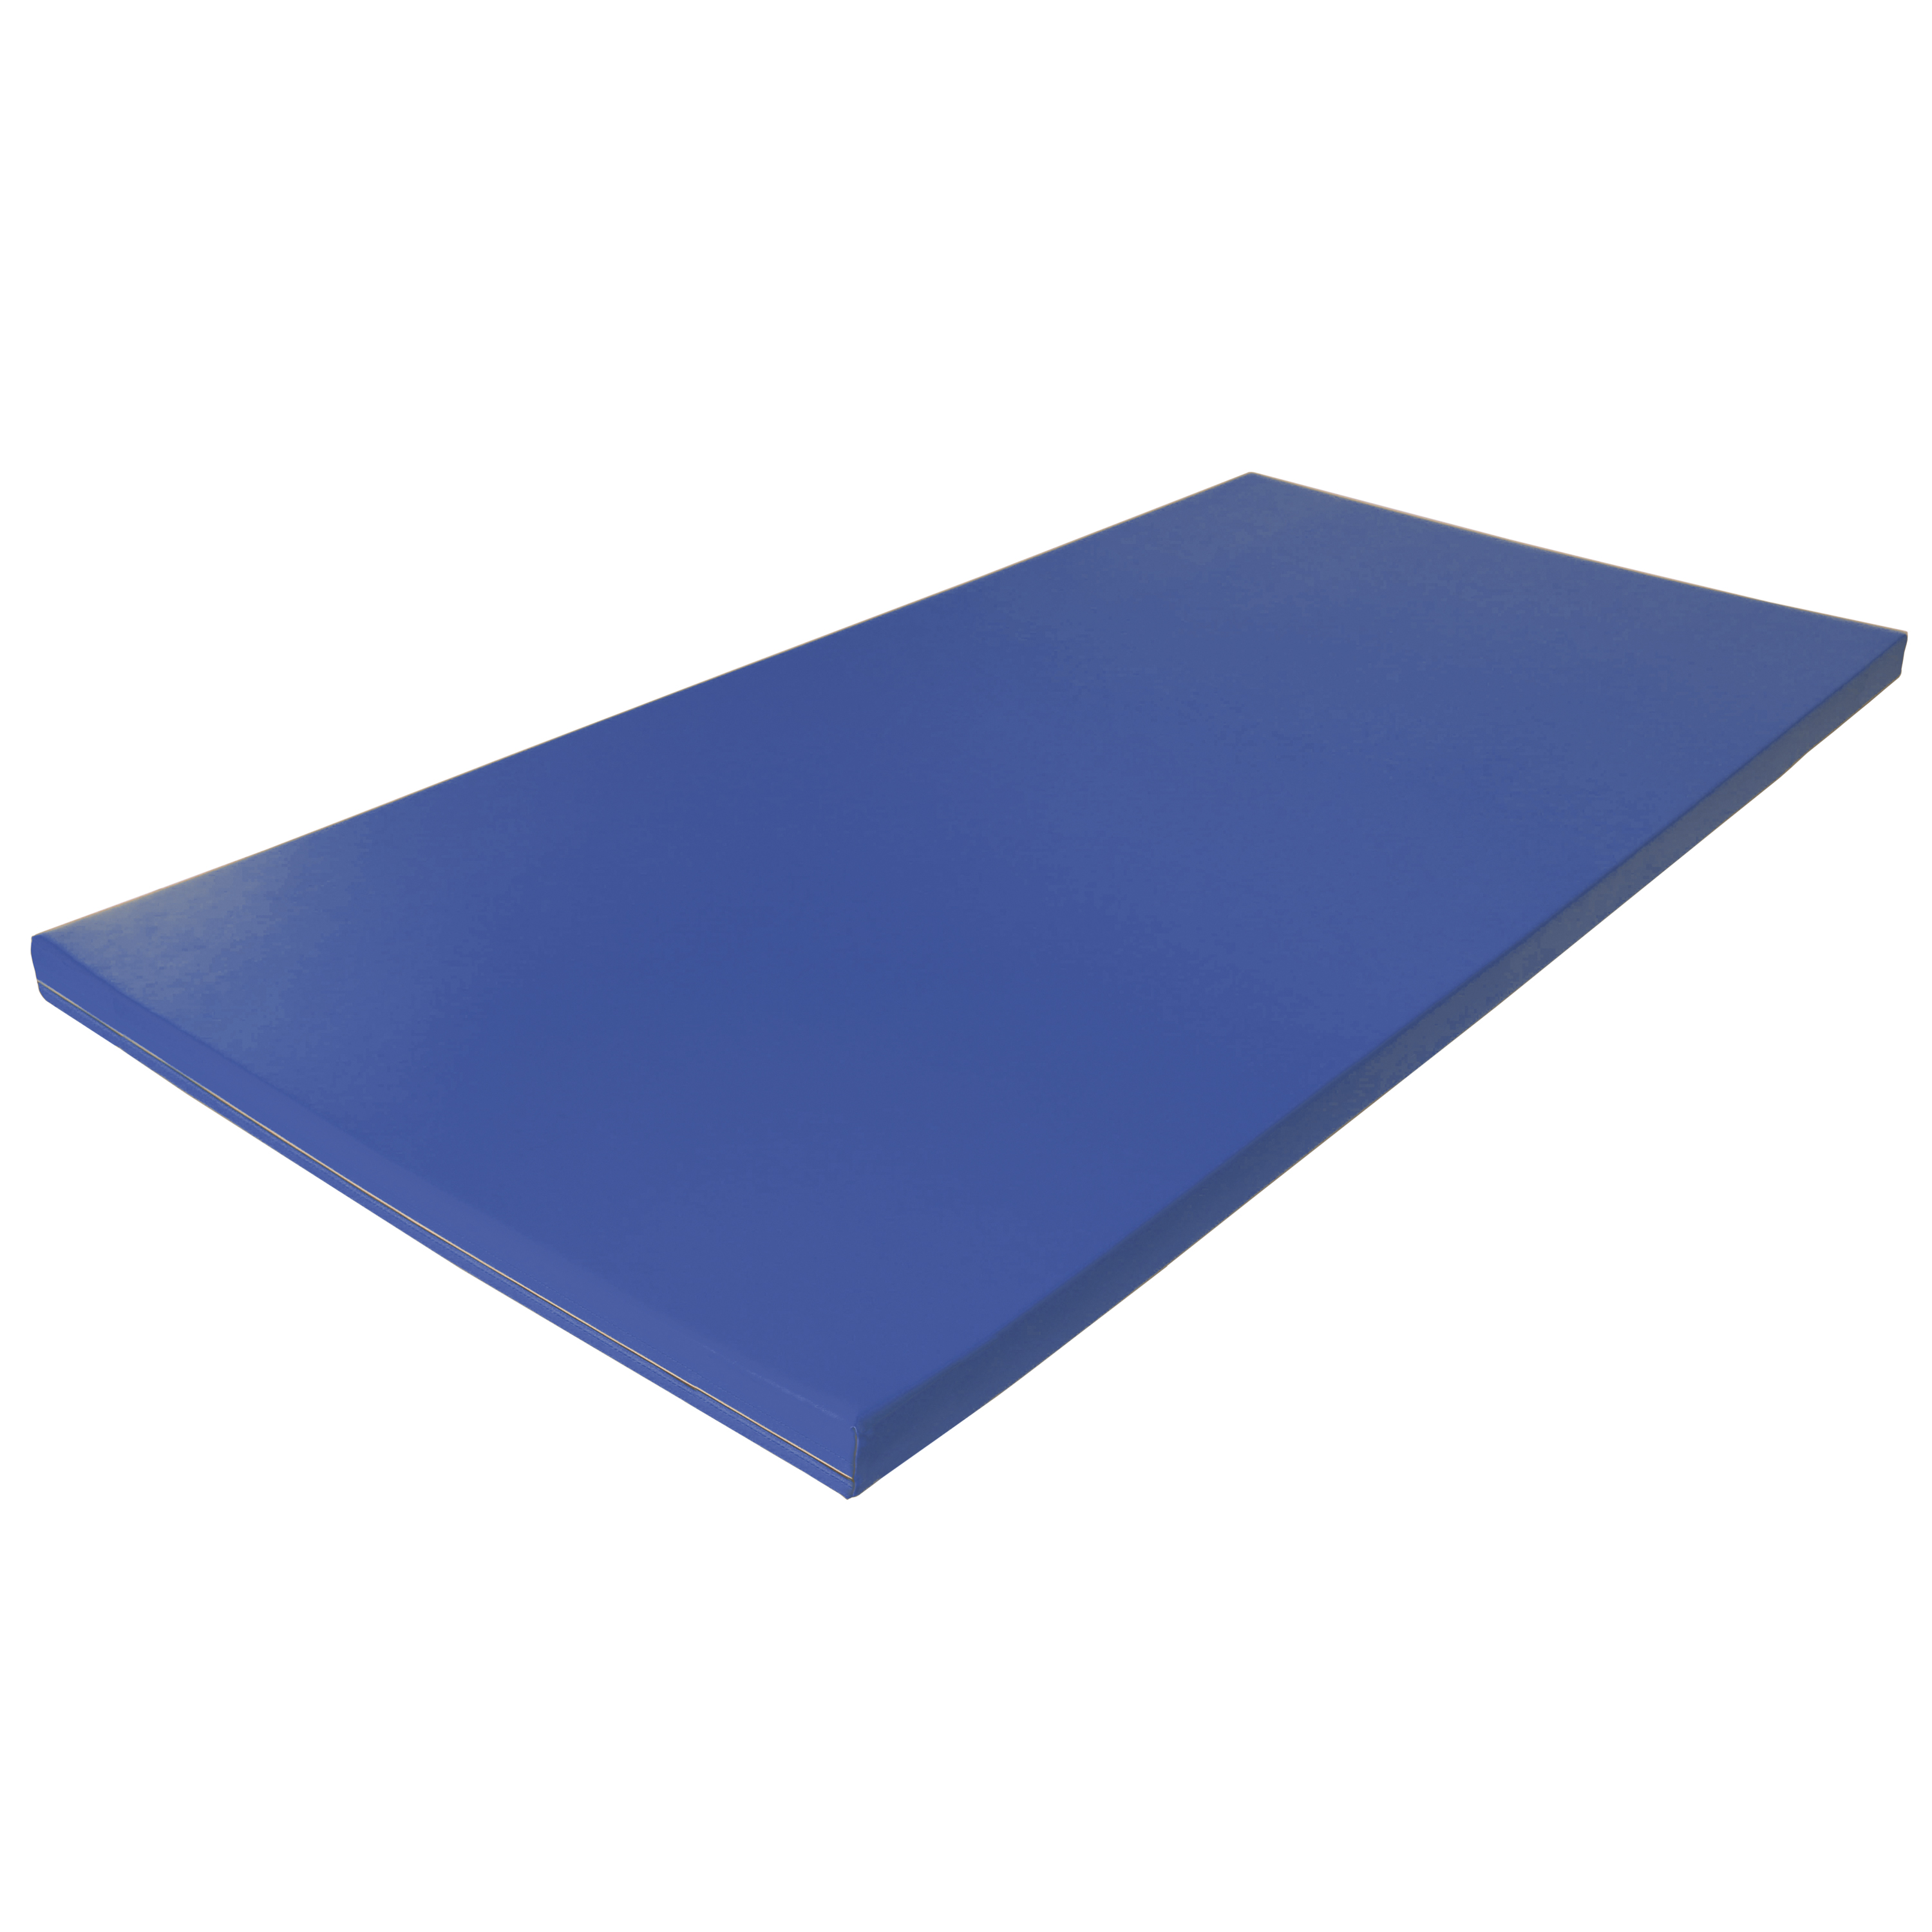 Fallschutzmatte Superleicht 'blau', 200 x 100 cm